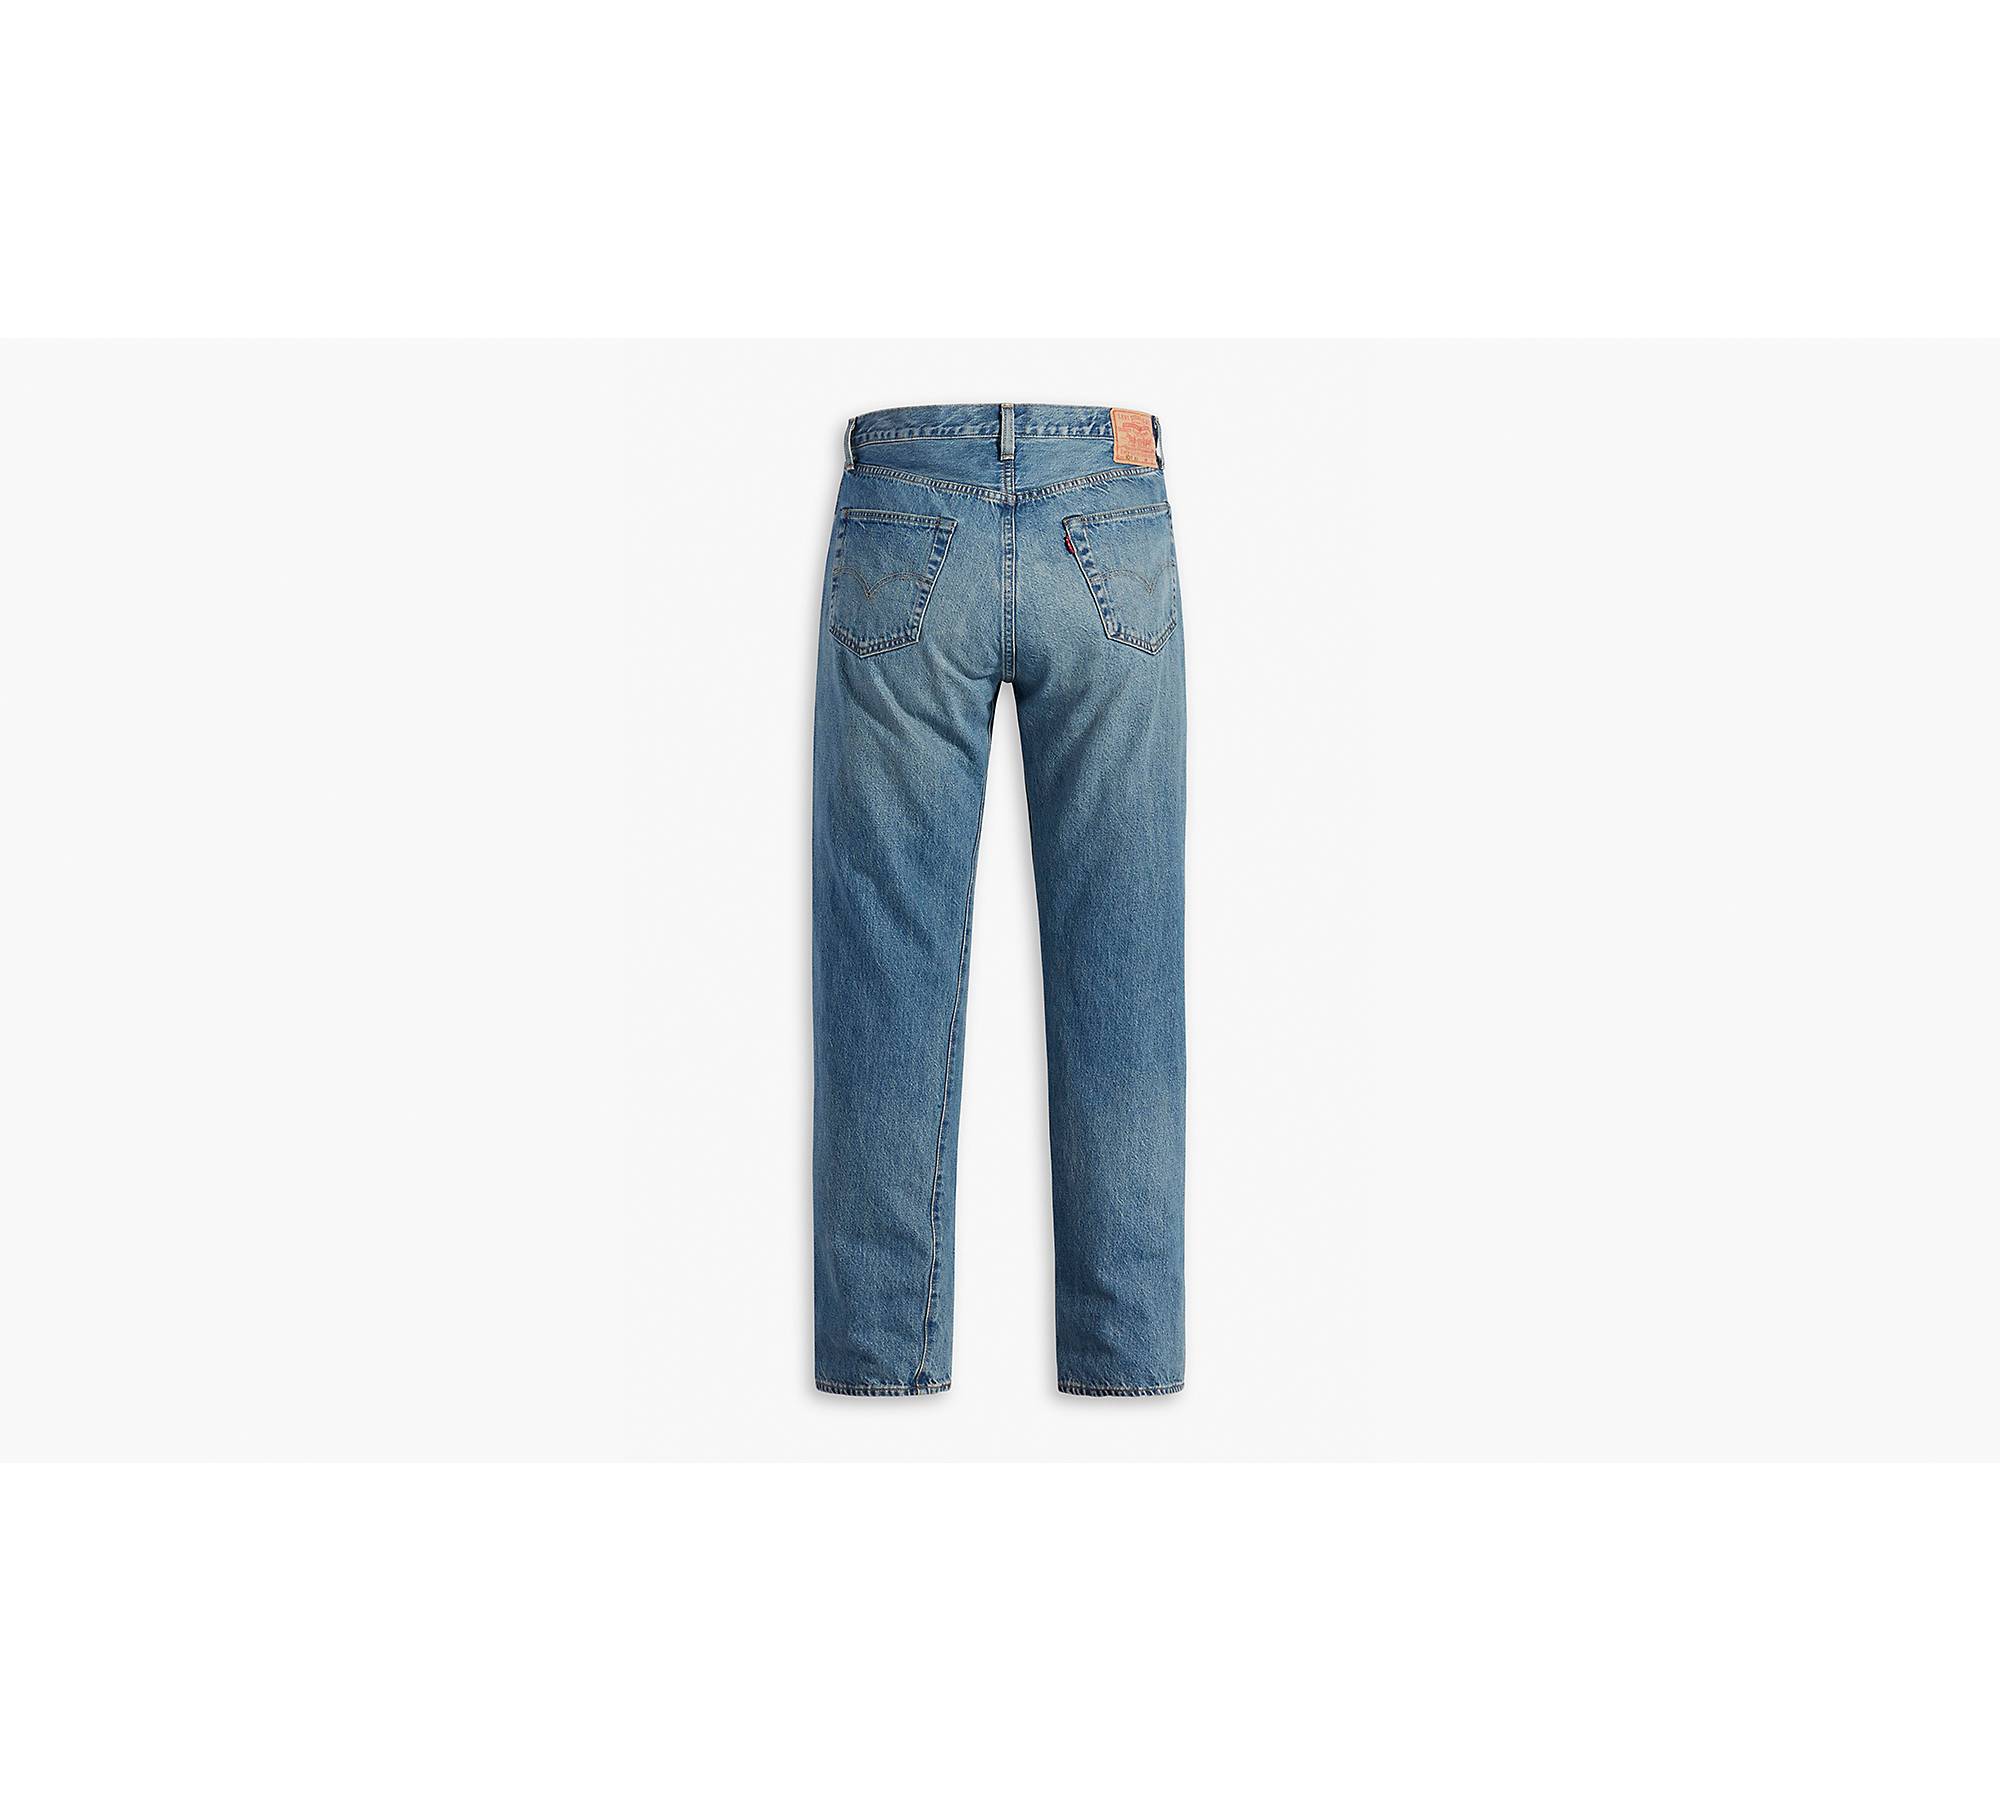 1955 501® Original Fit Selvedge Men's Jeans - Medium Wash